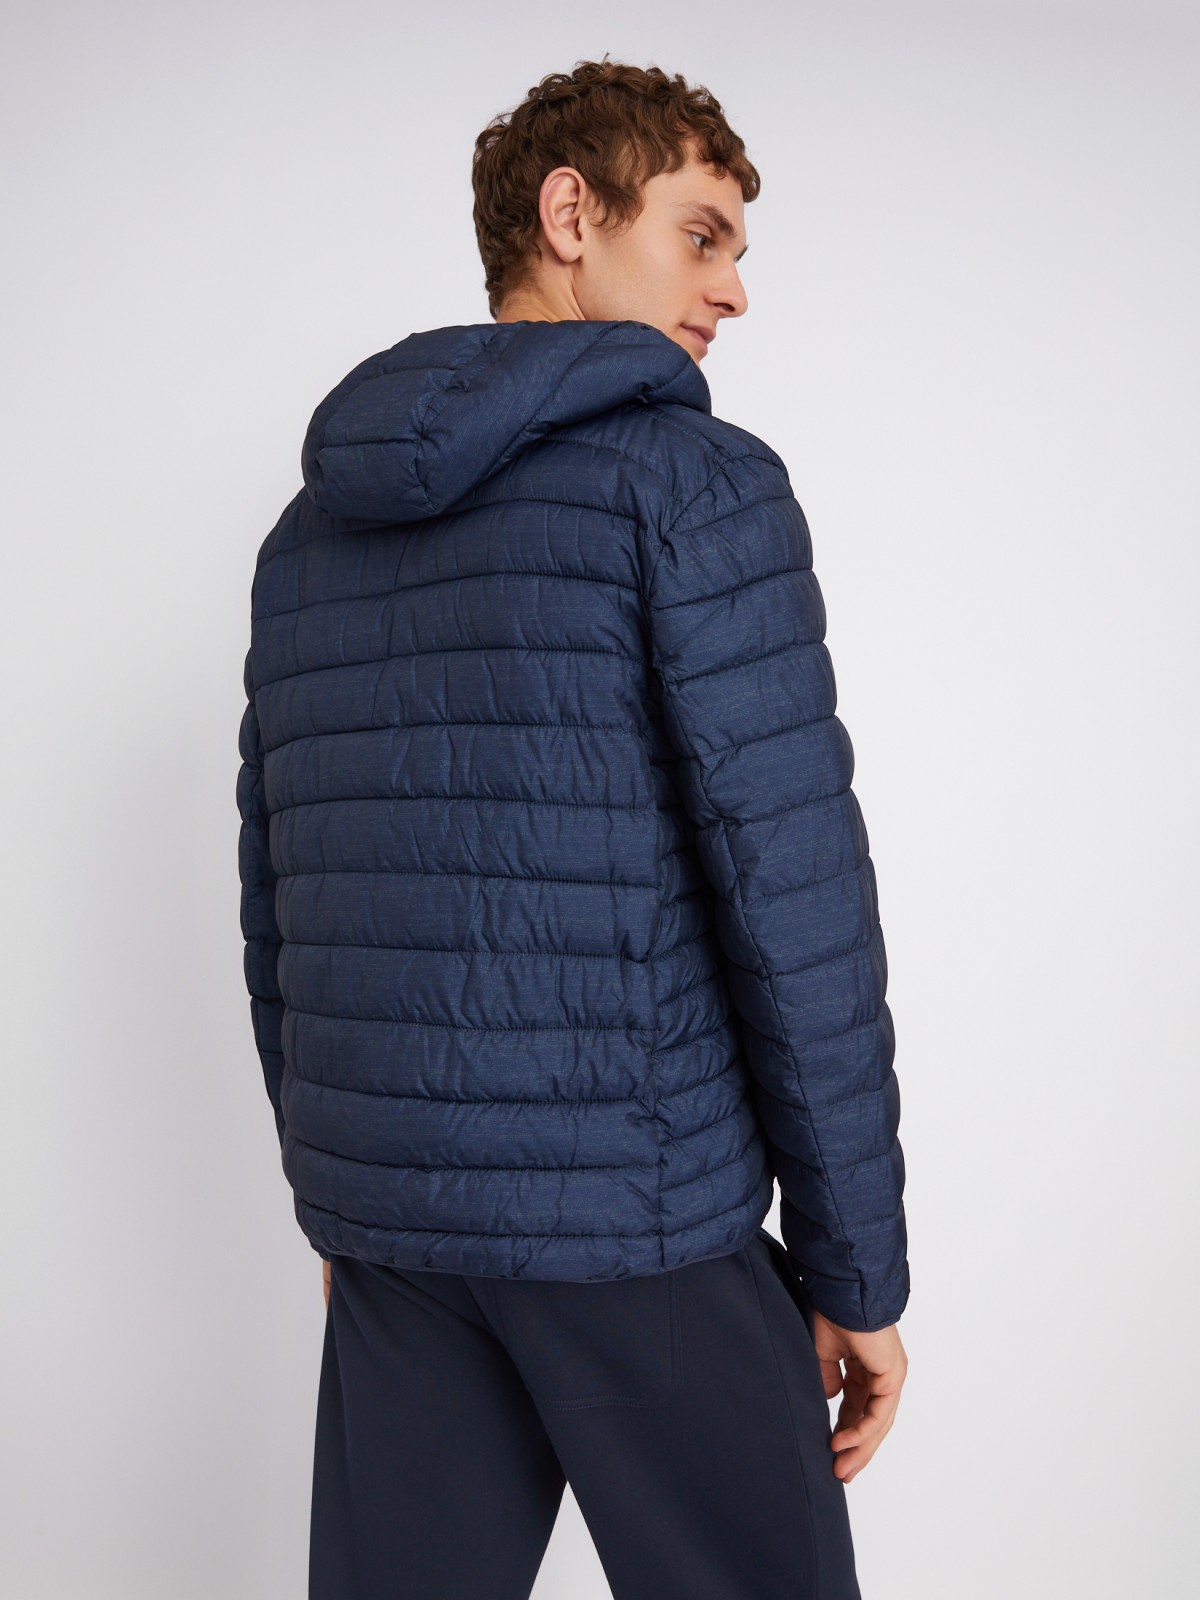 Лёгкая утеплённая стёганая куртка на молнии с капюшоном zolla 012335114184, цвет синий, размер L - фото 6